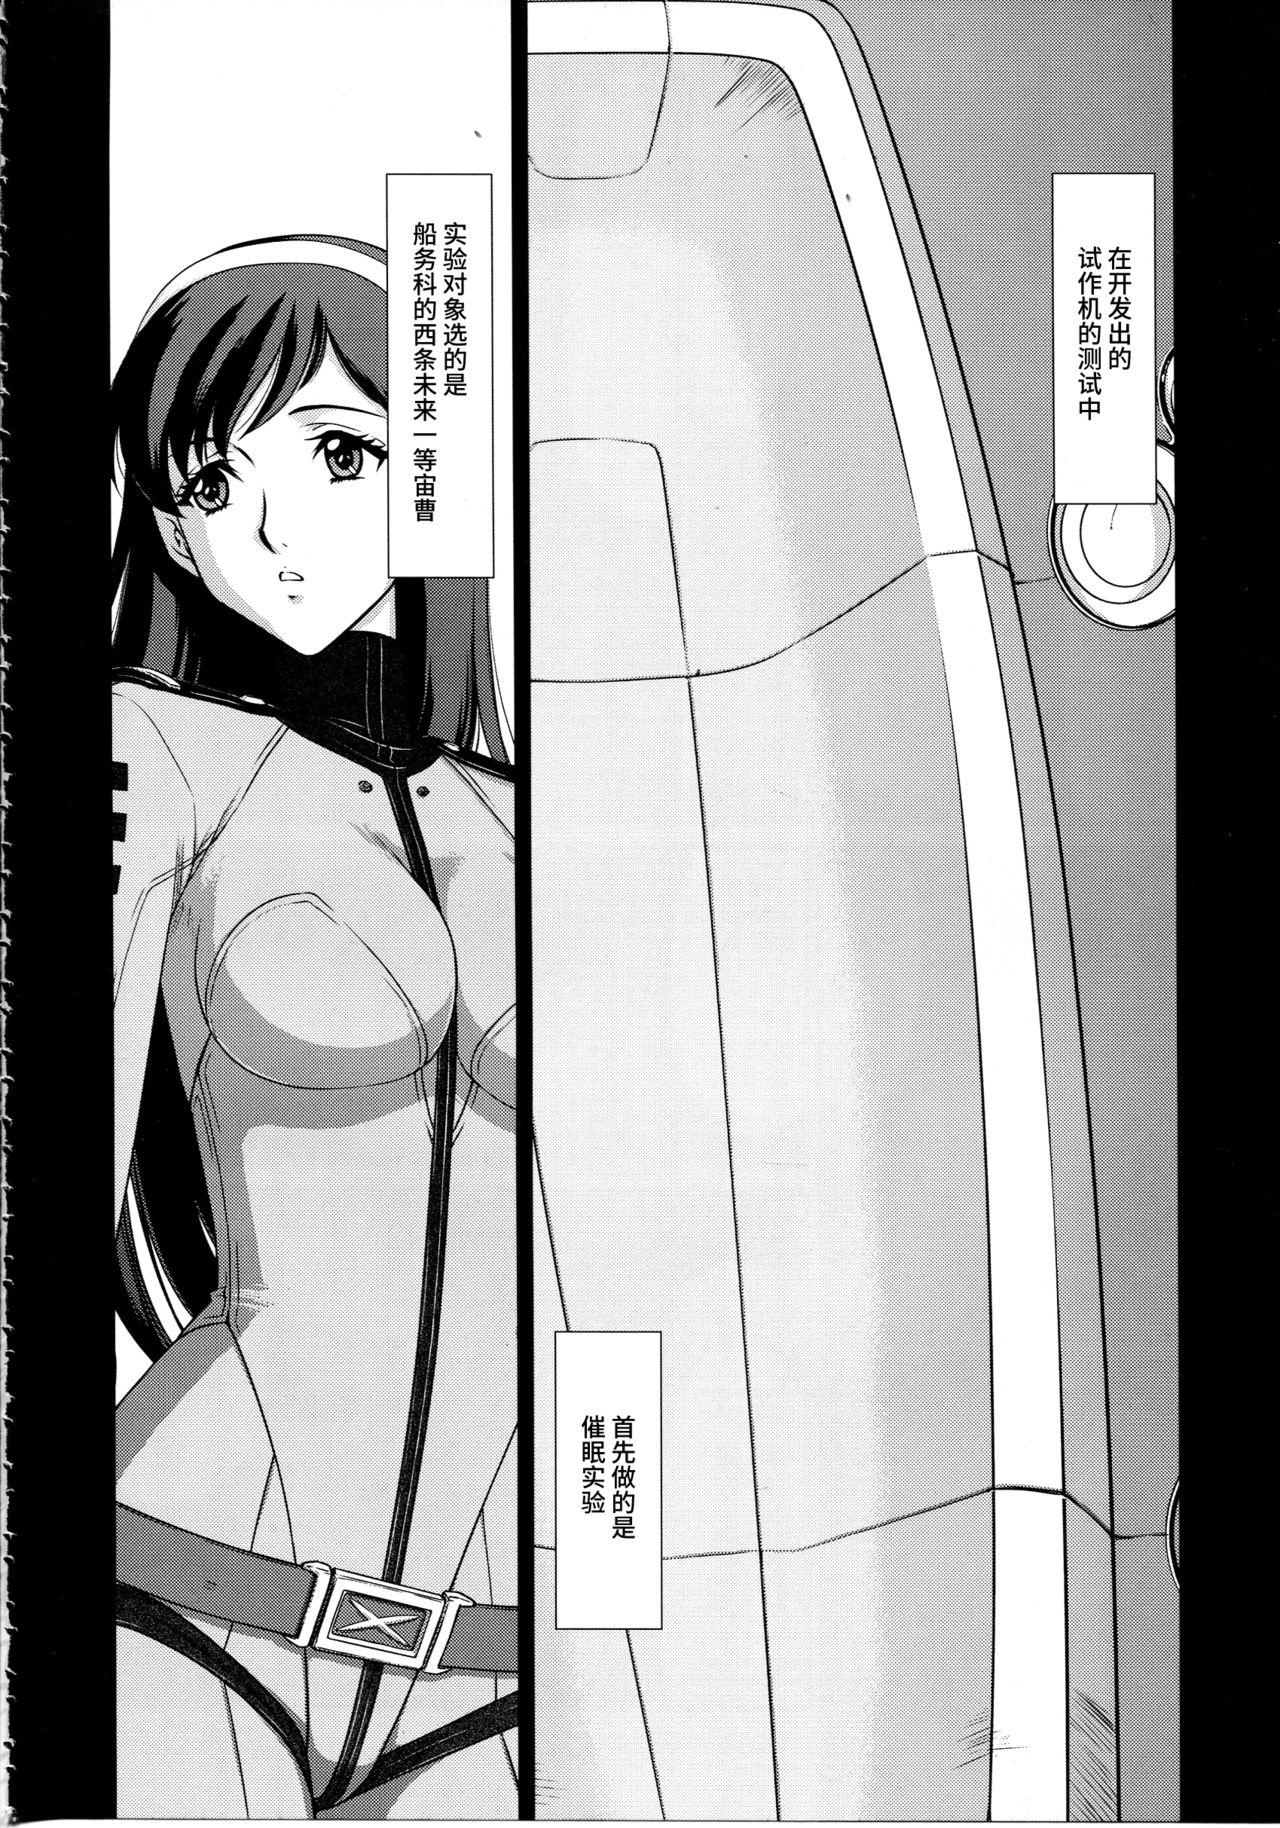 Nasty Free Porn Yuki no Shizuku - Space battleship yamato 2199 Hair - Page 5